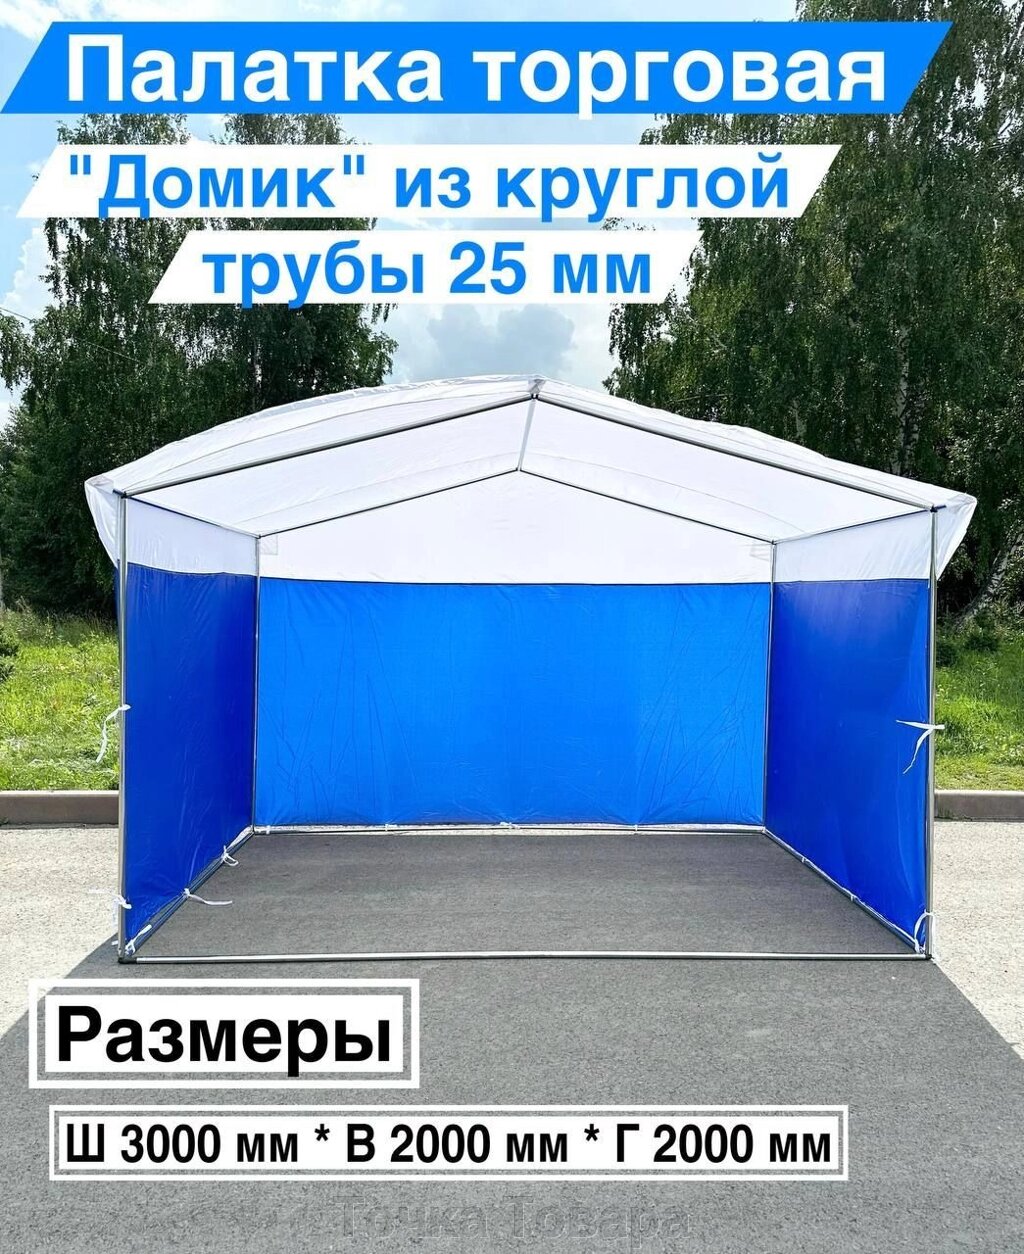 Палатка Торговая "ДОМИК" 2х3м на металлическом каркасе с тентом от компании Точка Товара - фото 1